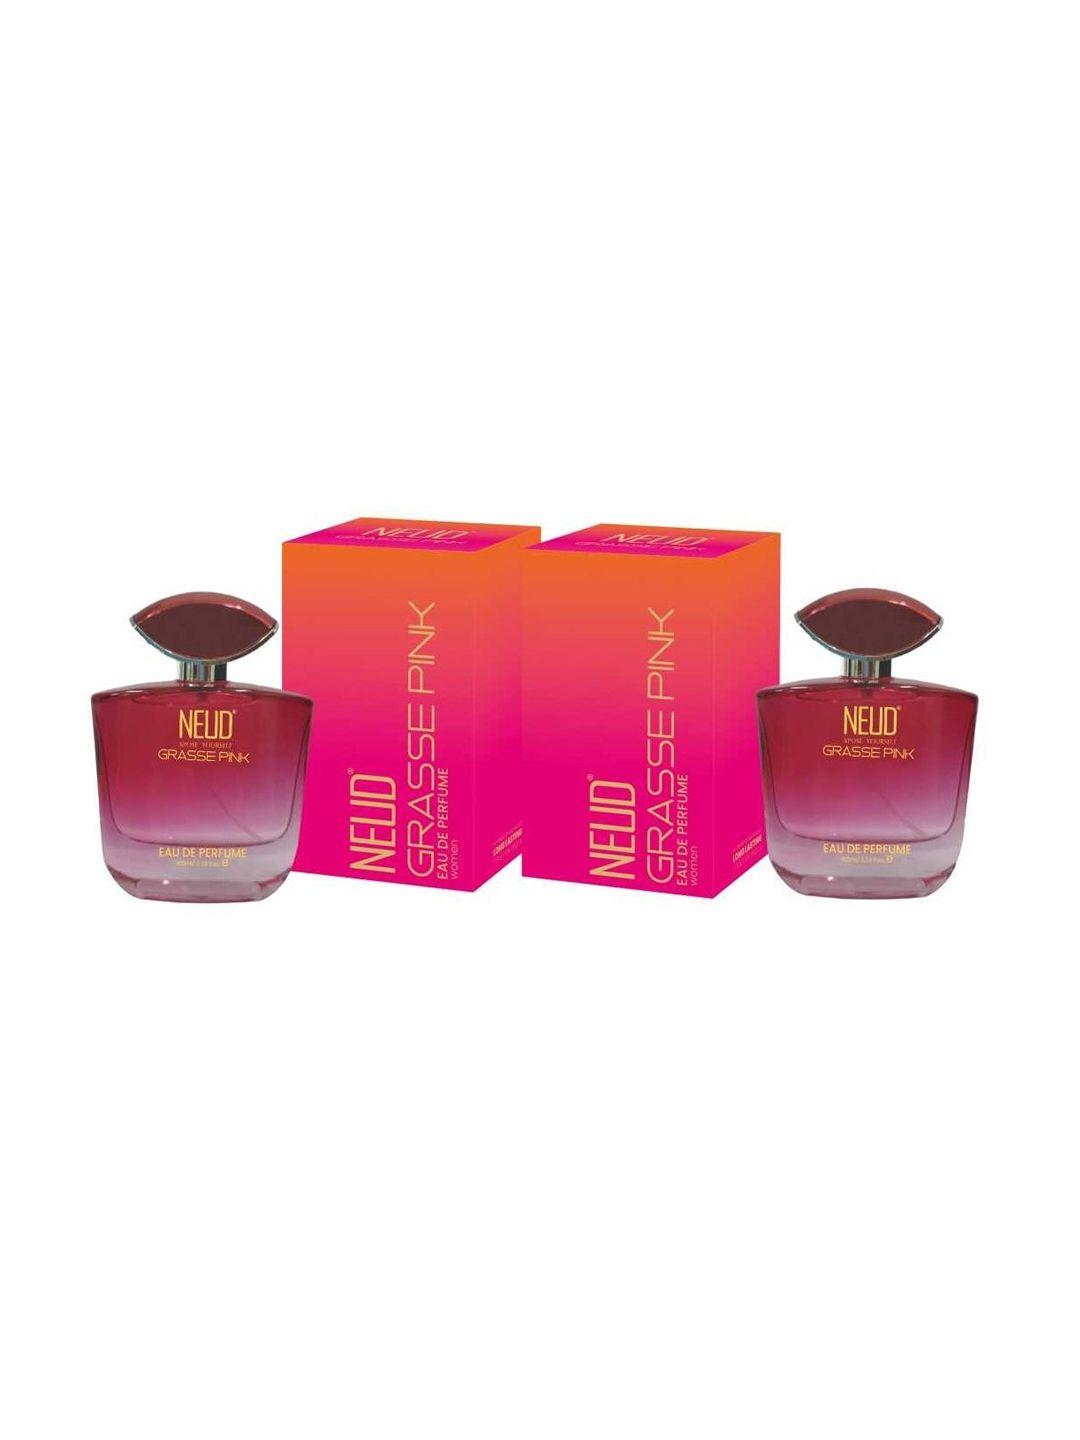 neud grasse pink set of 2 women long lasting eau de perfume 100ml each